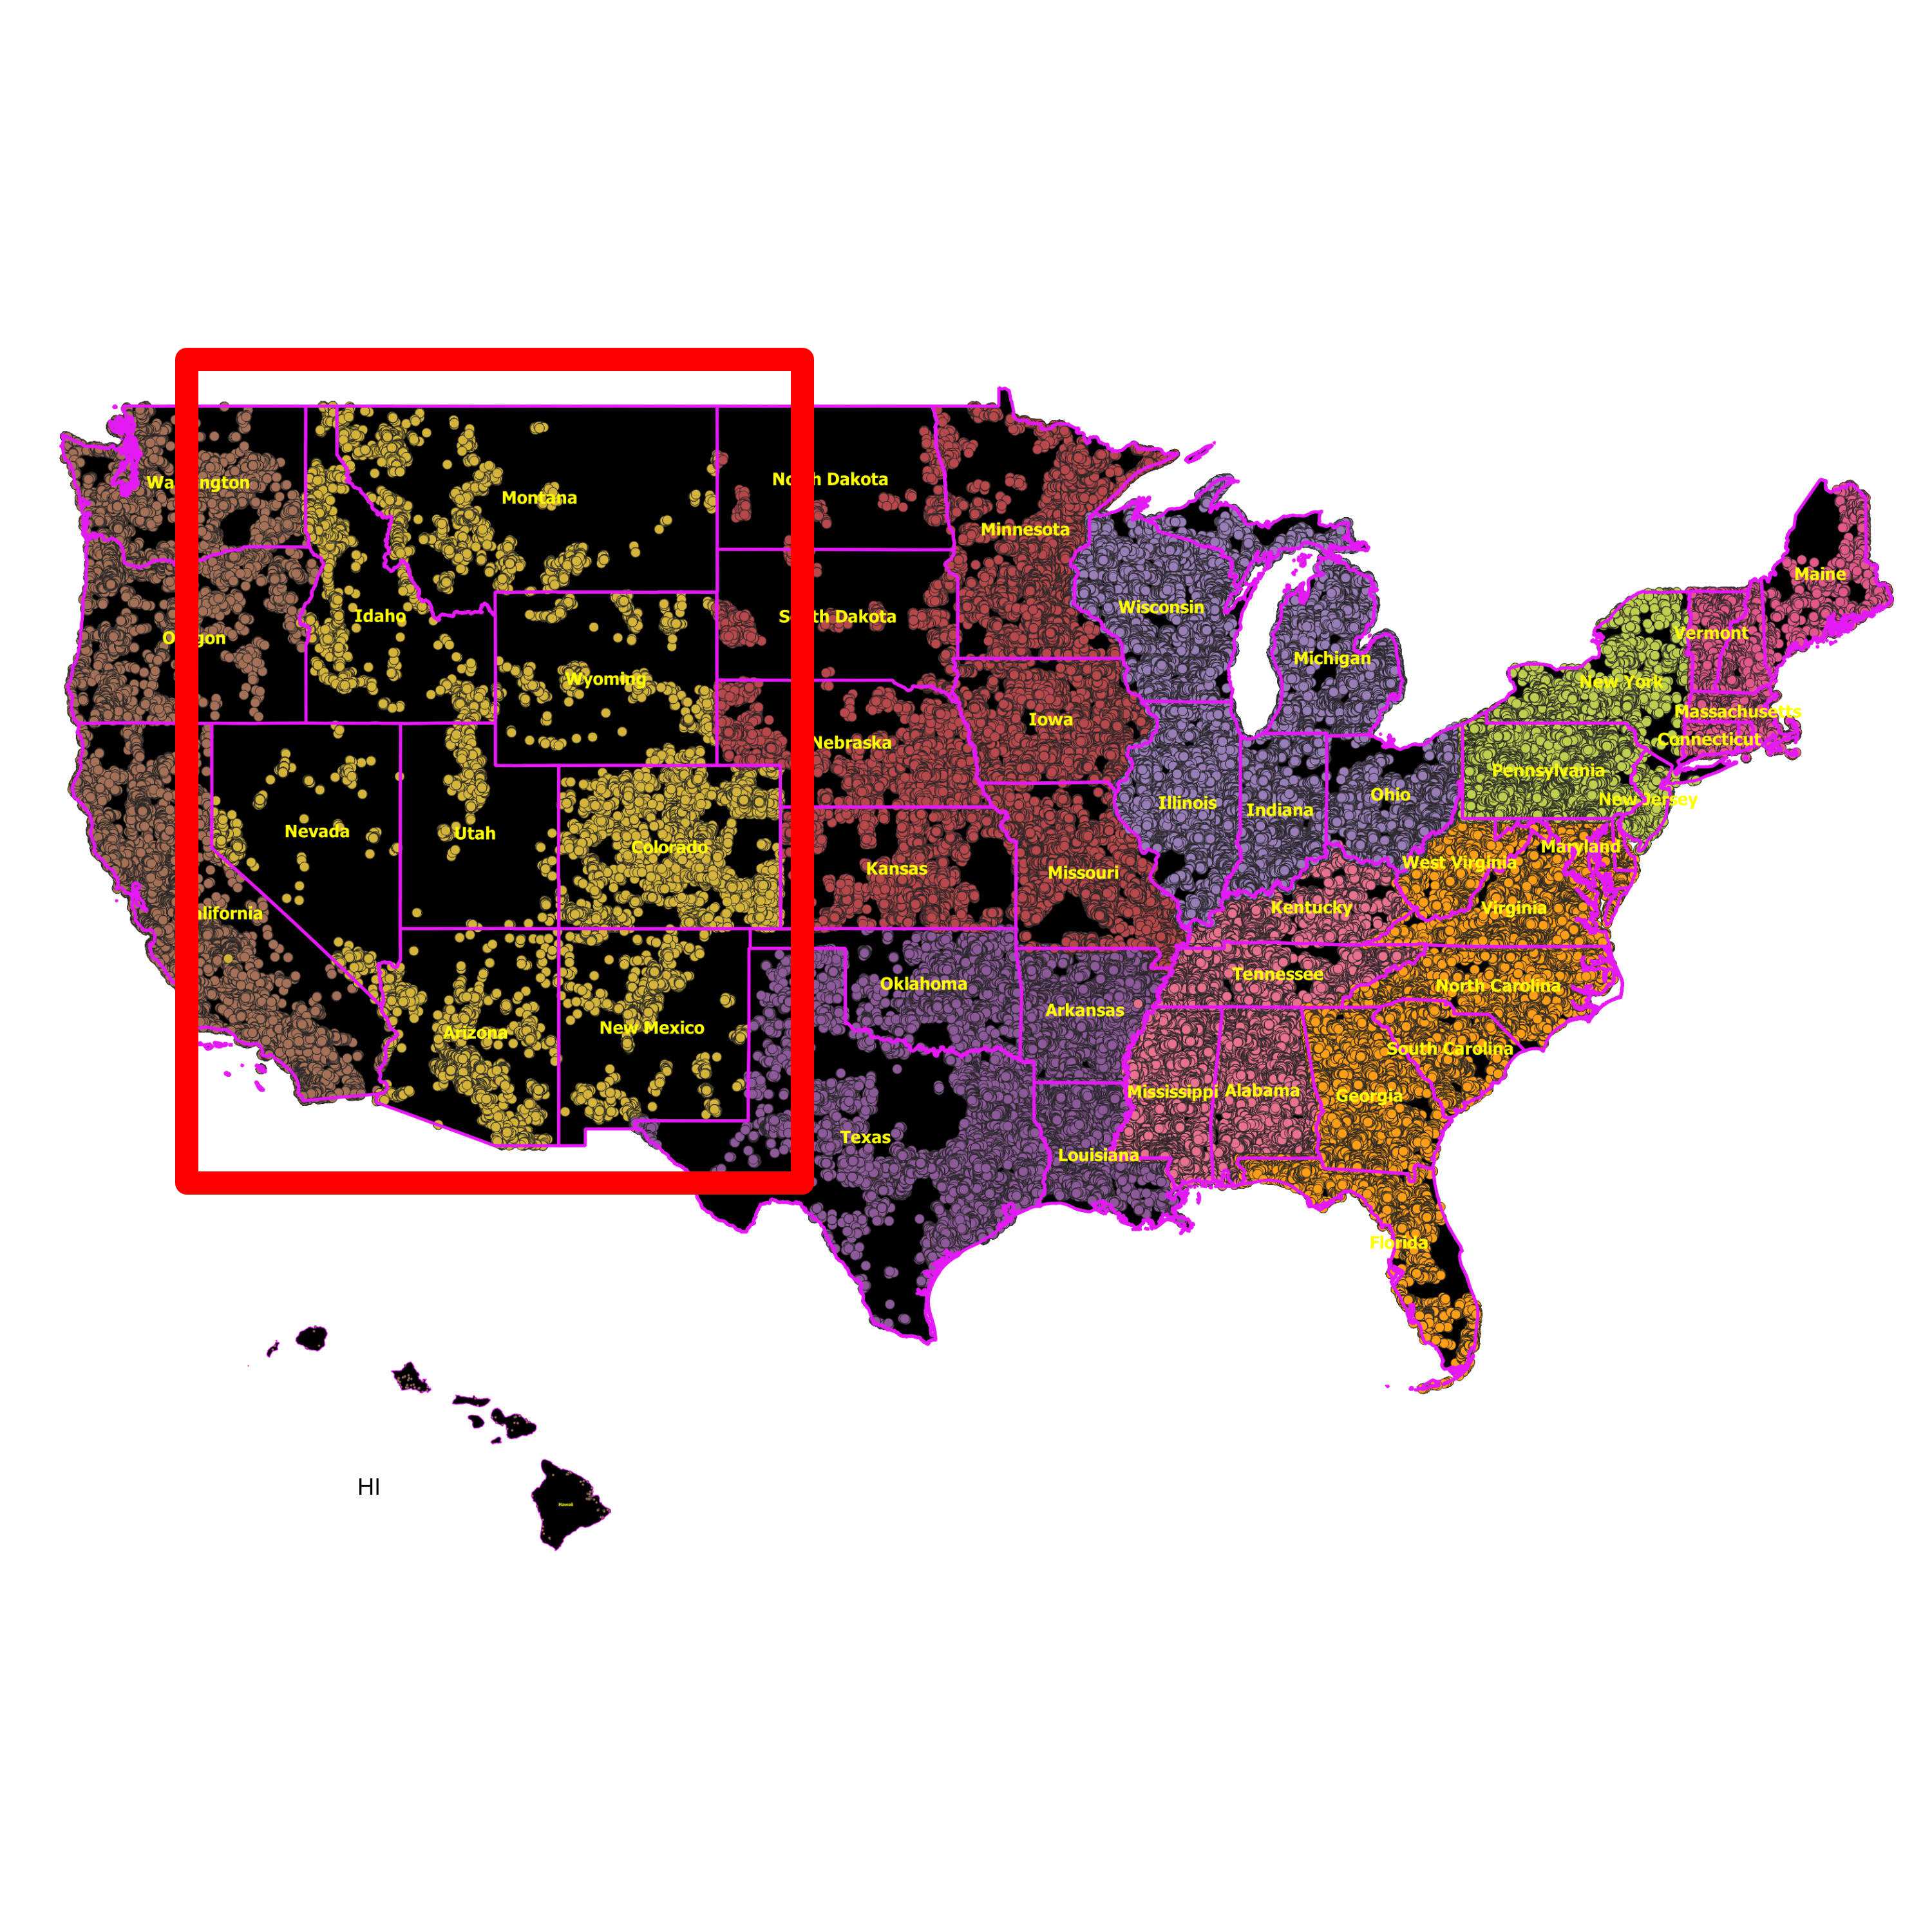 Mountain (AZ, CO, ID, MT, NV, NM, UT, WY) - RDOF Location Analyzer